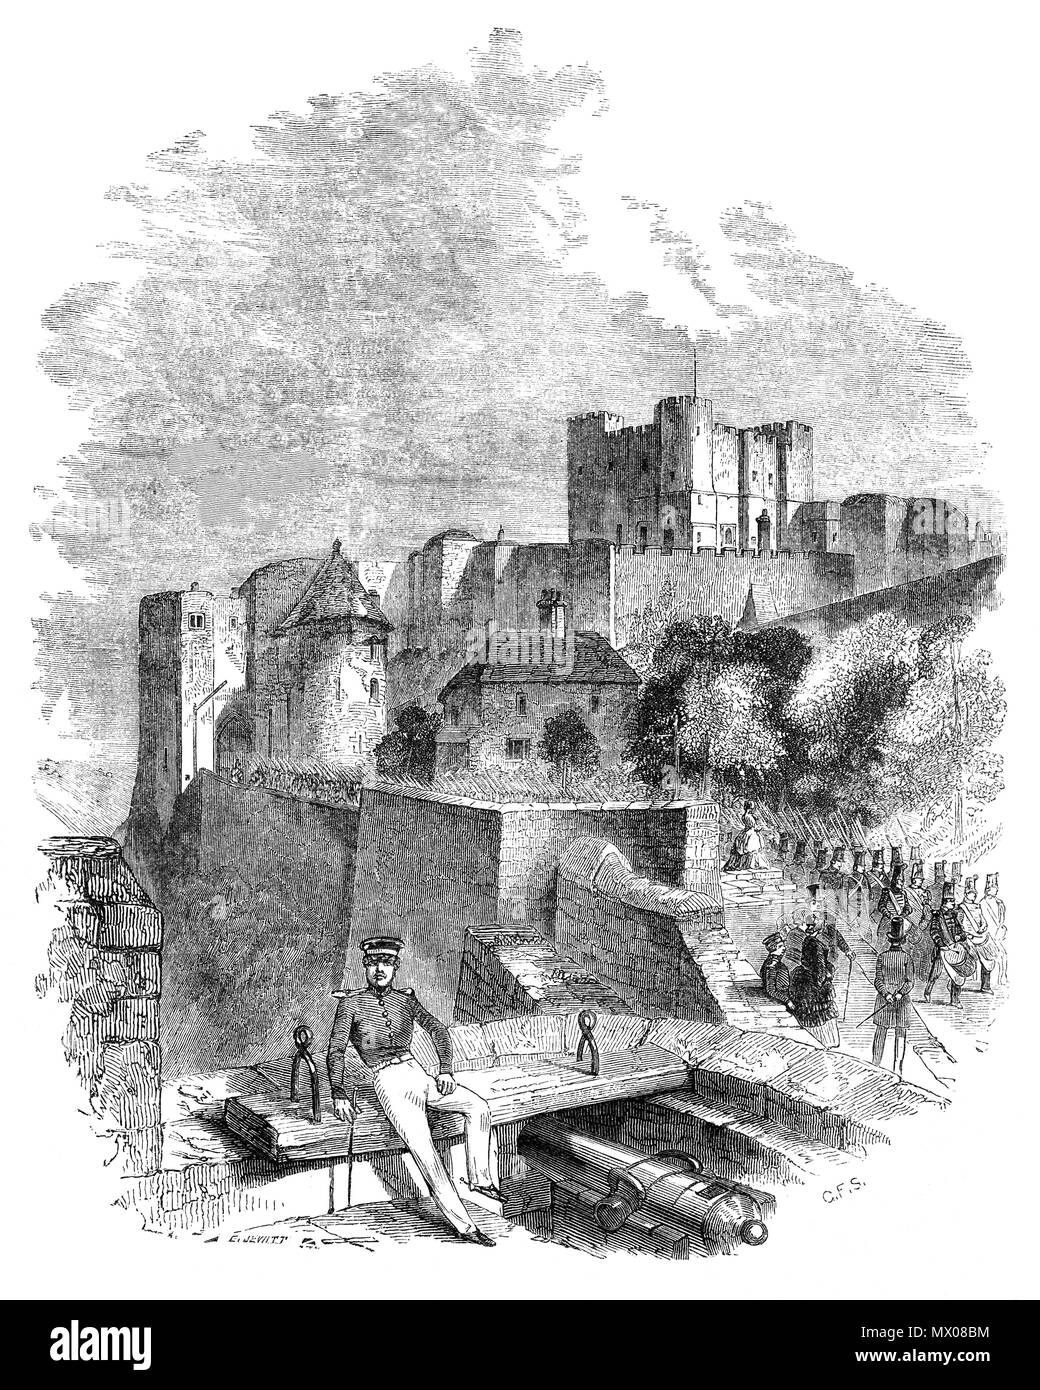 Medieval Castillo de Dover en Dover, Kent, Inglaterra, fue fundado en el siglo XI, y ha sido descrito como la "Llave de Inglaterra", debido a su importancia defensiva a lo largo de la historia. En 1216, un grupo de barones rebeldes, insatisfecho con el Rey Juan invitó al futuro Luis VIII de Francia a venir y tomar la corona inglesa. Louis necesitaba agarrotan el castillo y el primer sitio comenzó el 19 de julio. Louis tomó el terreno elevado al norte Hubert de Burgh la guarnición de hombres repelió a los invasores, bloqueando el incumplimiento en las paredes con maderas de gigante. Después de tres meses Louis pidió una tregua el 14 de octubre. Foto de stock